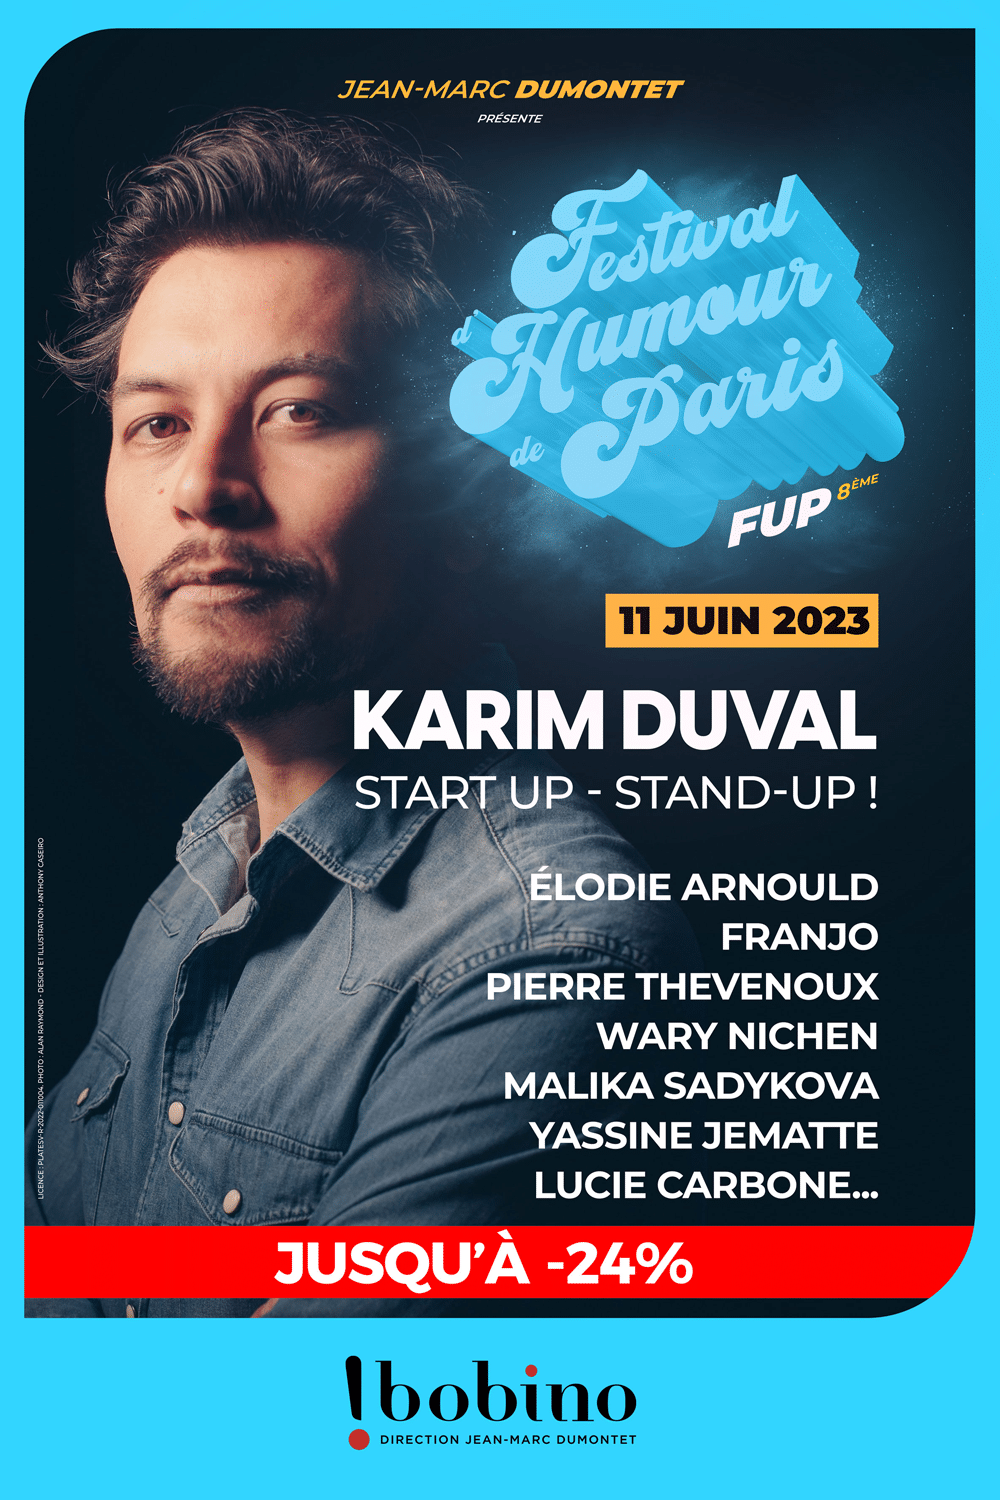 Start-up, stand-up avec Karim Duval - Festival d'Humour de Paris FUP